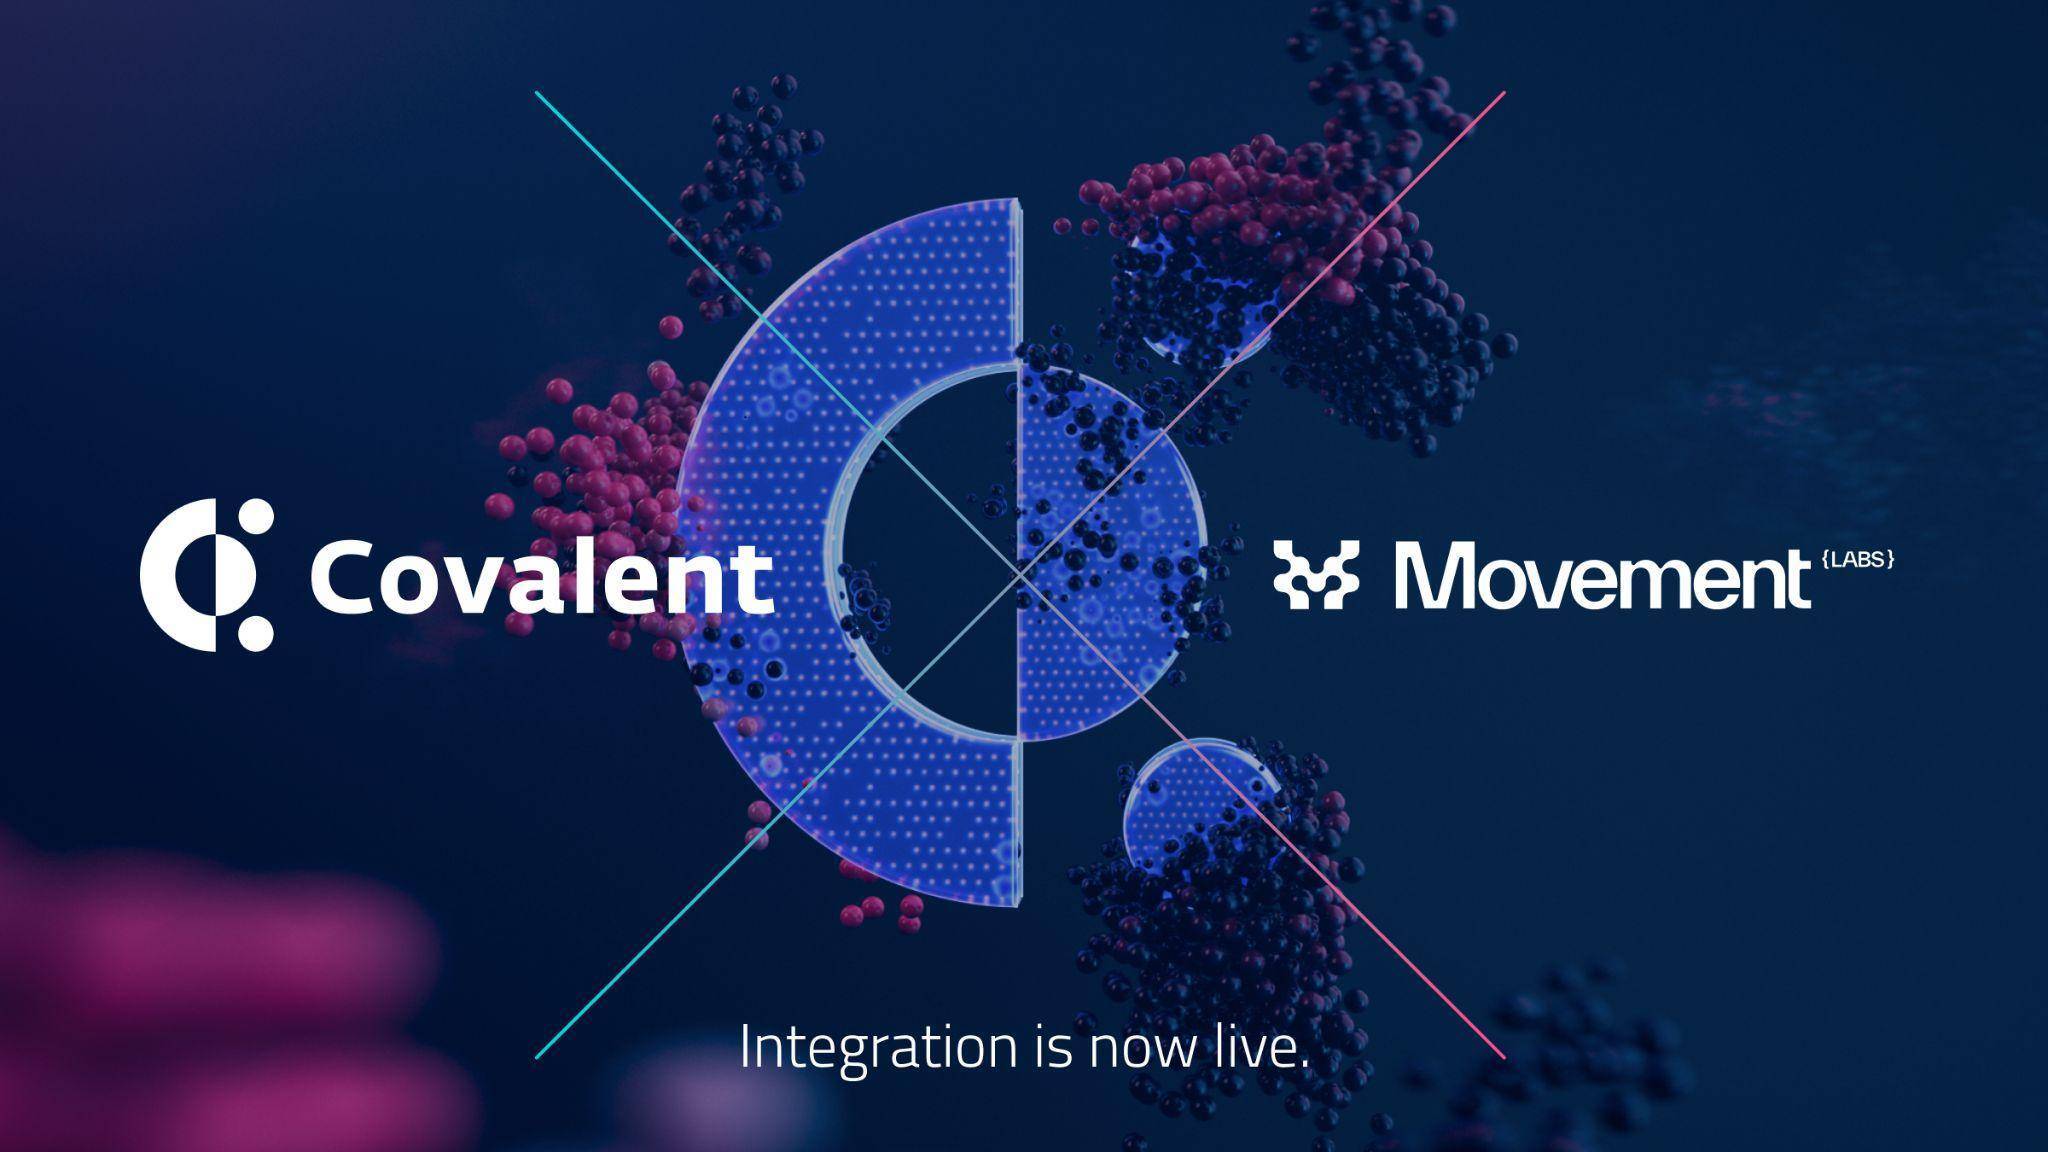 Covalent cqt Hợp Tác Với Movement Labs Cung Cấp Khả Năng Tiếp Cận Dữ Liệu Blockchain Cho Hệ Sinh Thái M2